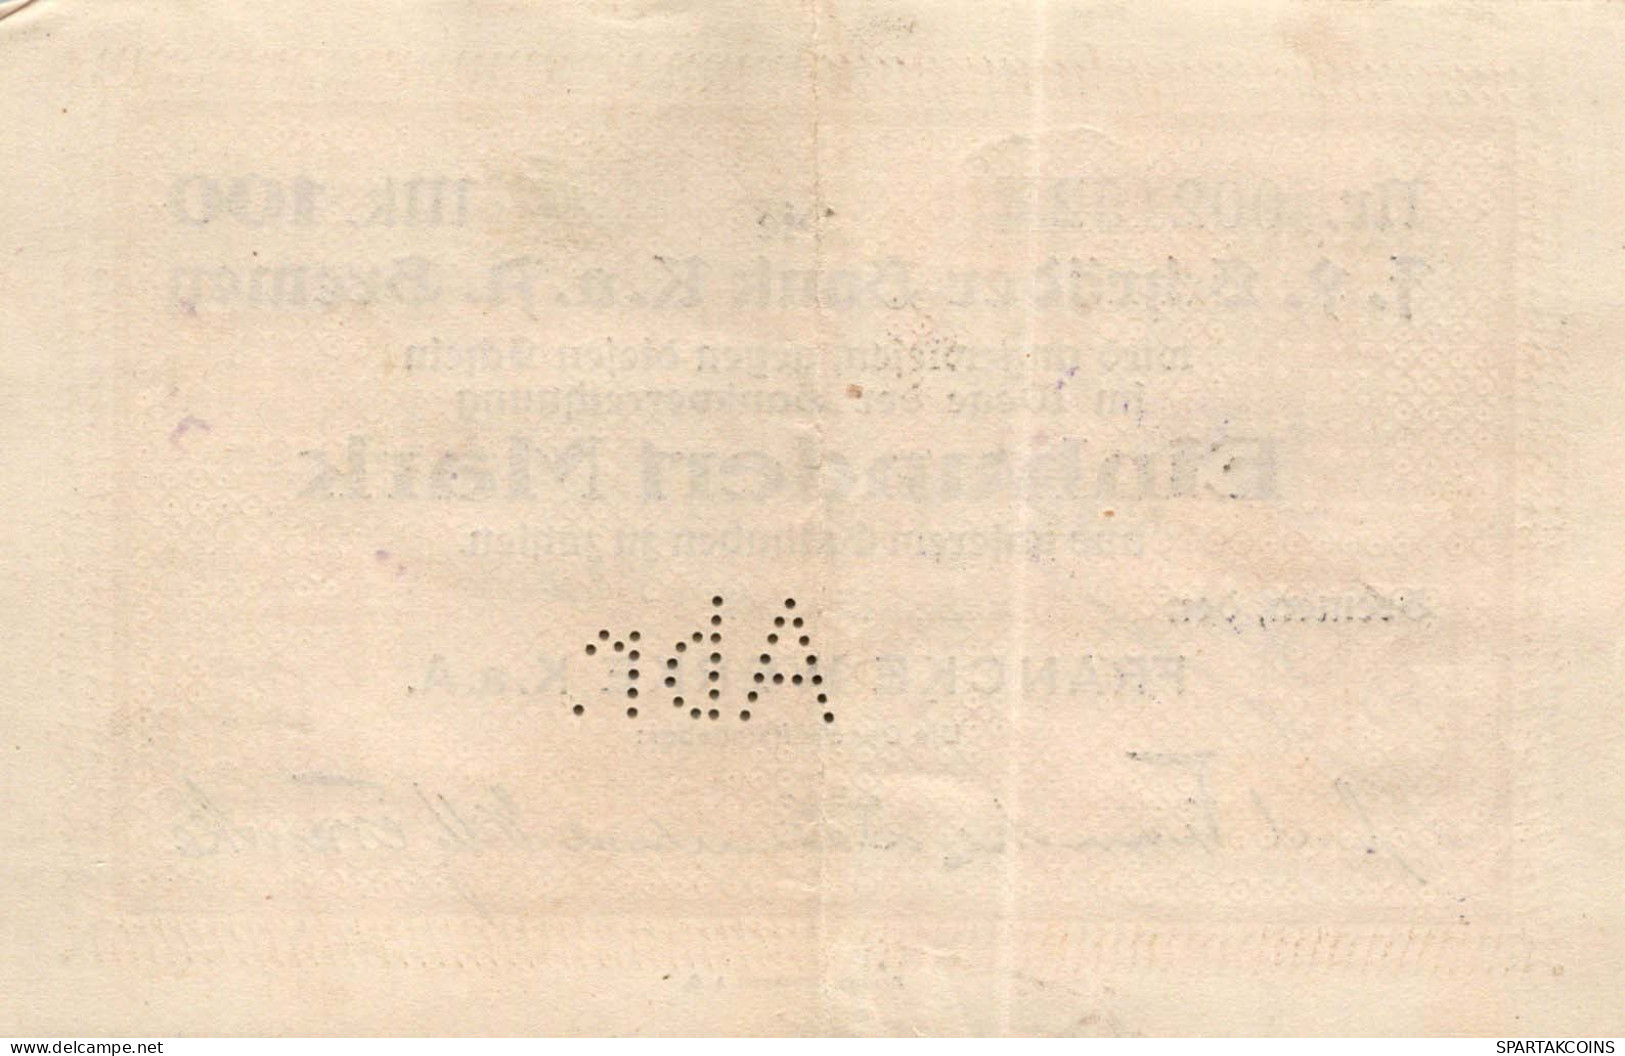 100 MARK 1923 Stadt BREMEN Bremen UNC DEUTSCHLAND Notgeld Papiergeld Banknote #PK753 - [11] Emissions Locales